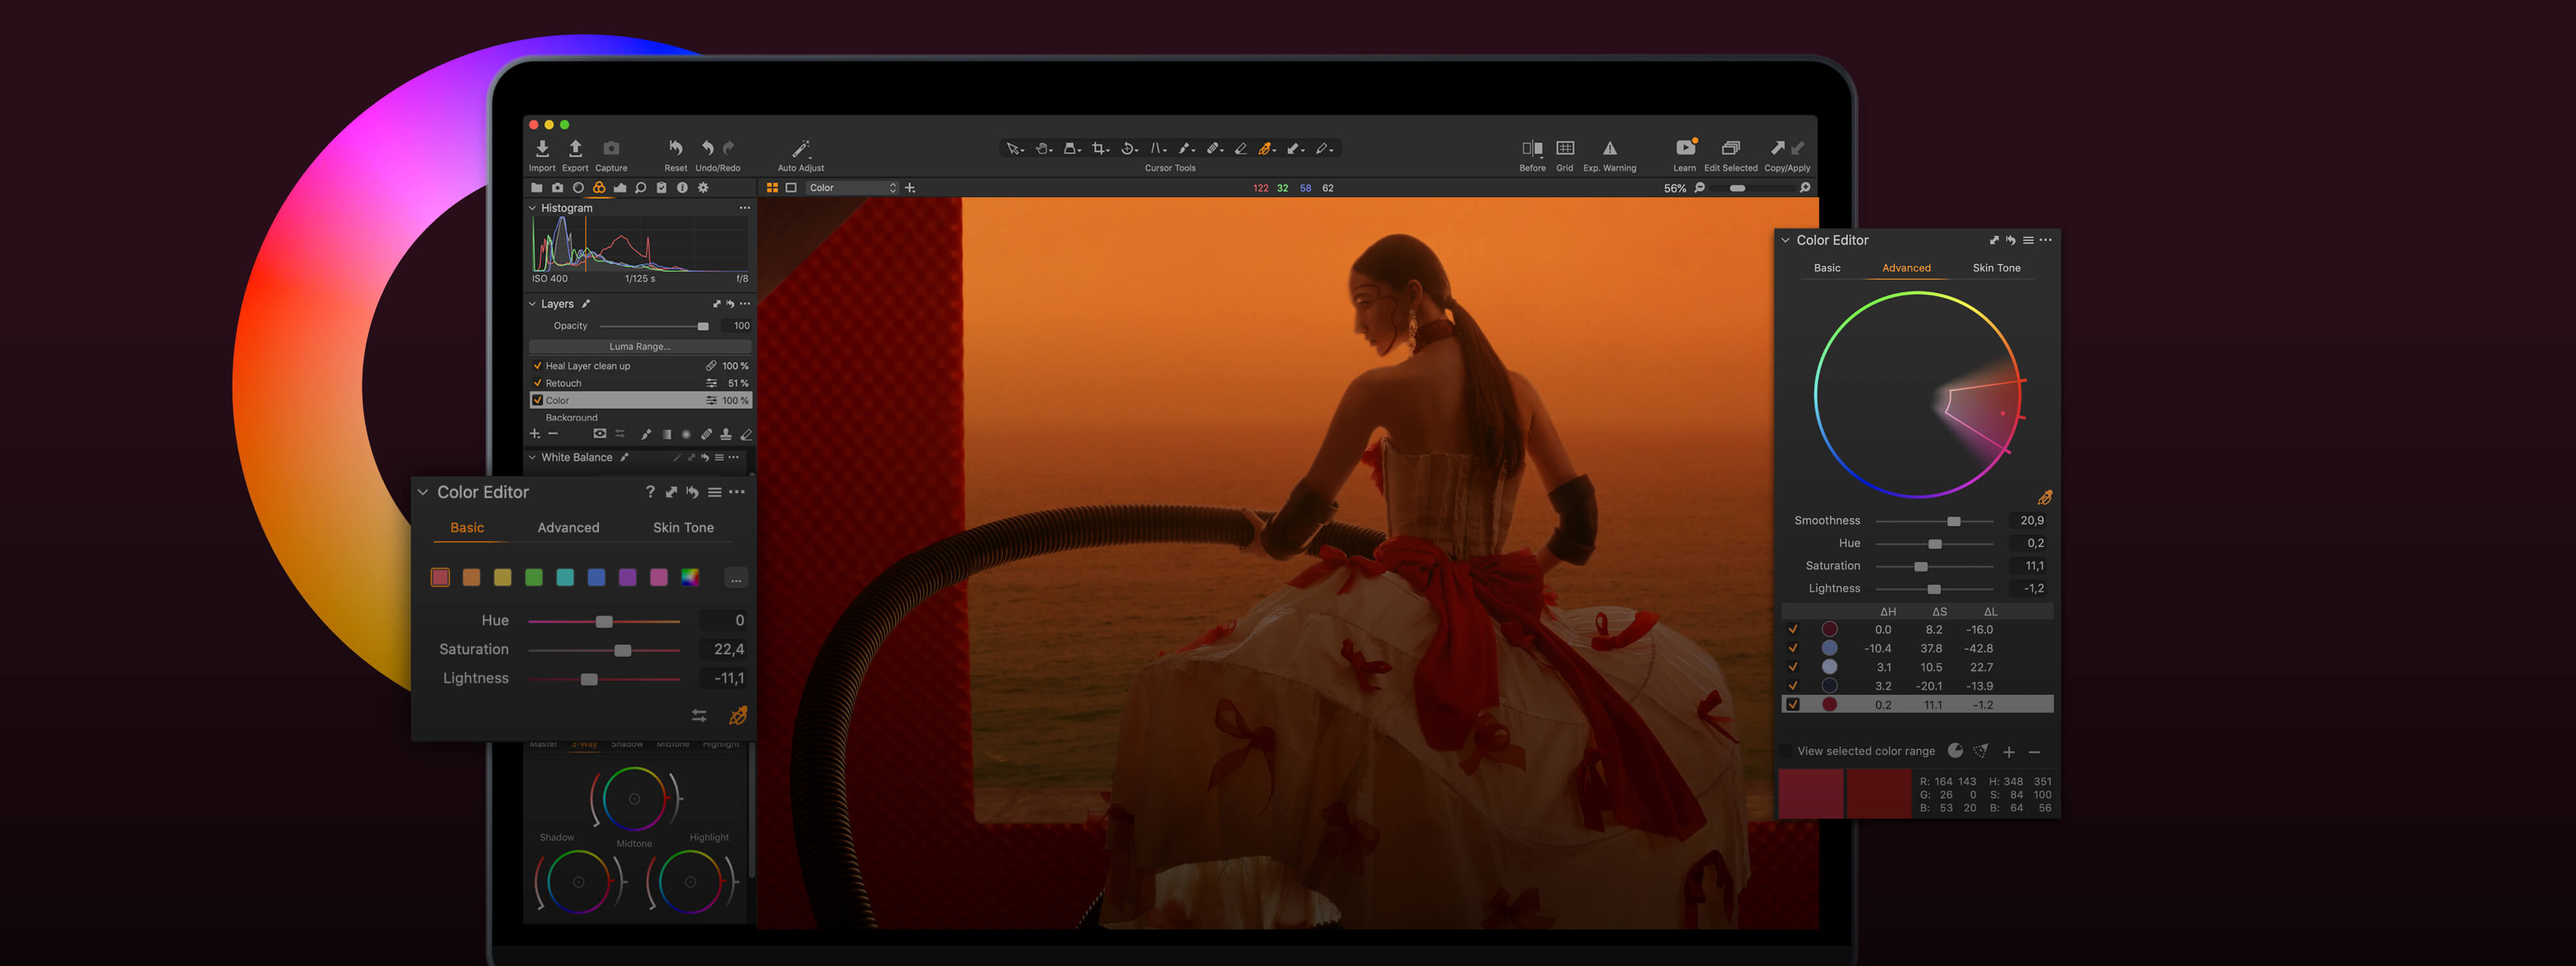 Capture One 23 Pro for Mac 16.3.1.23 中文破解版 强大的RAW图像编辑工具